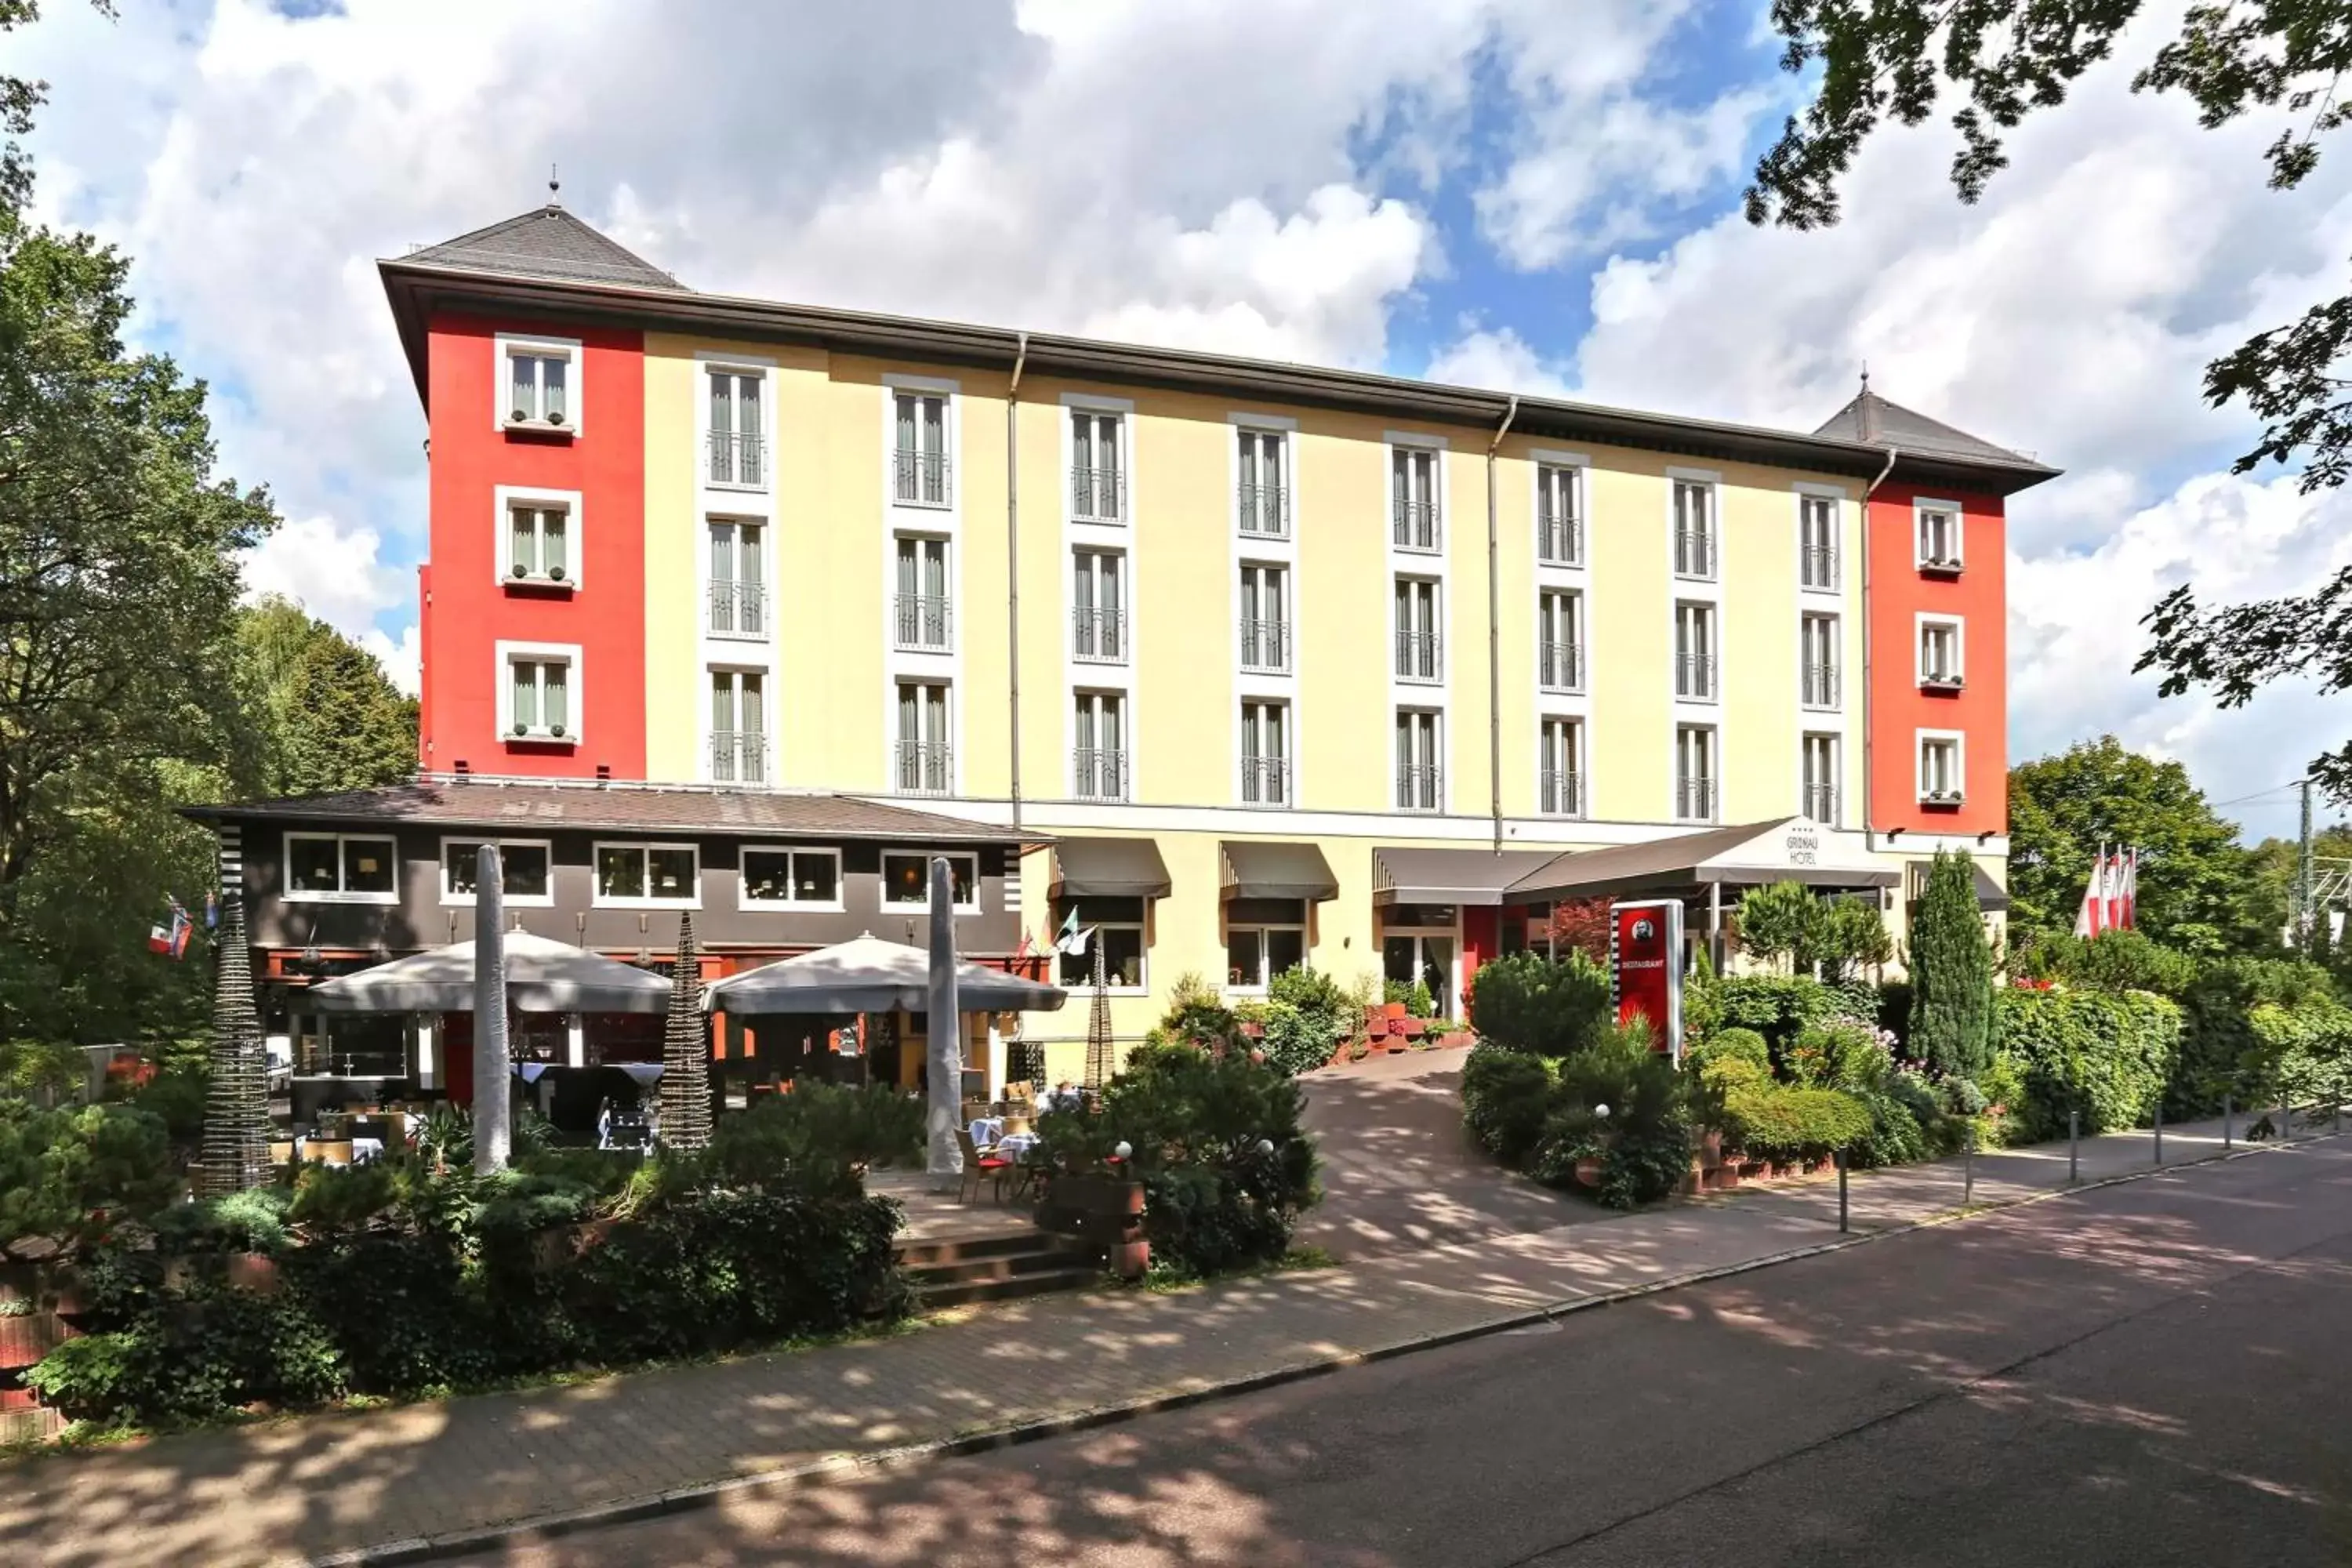 Property Building in Grünau Hotel